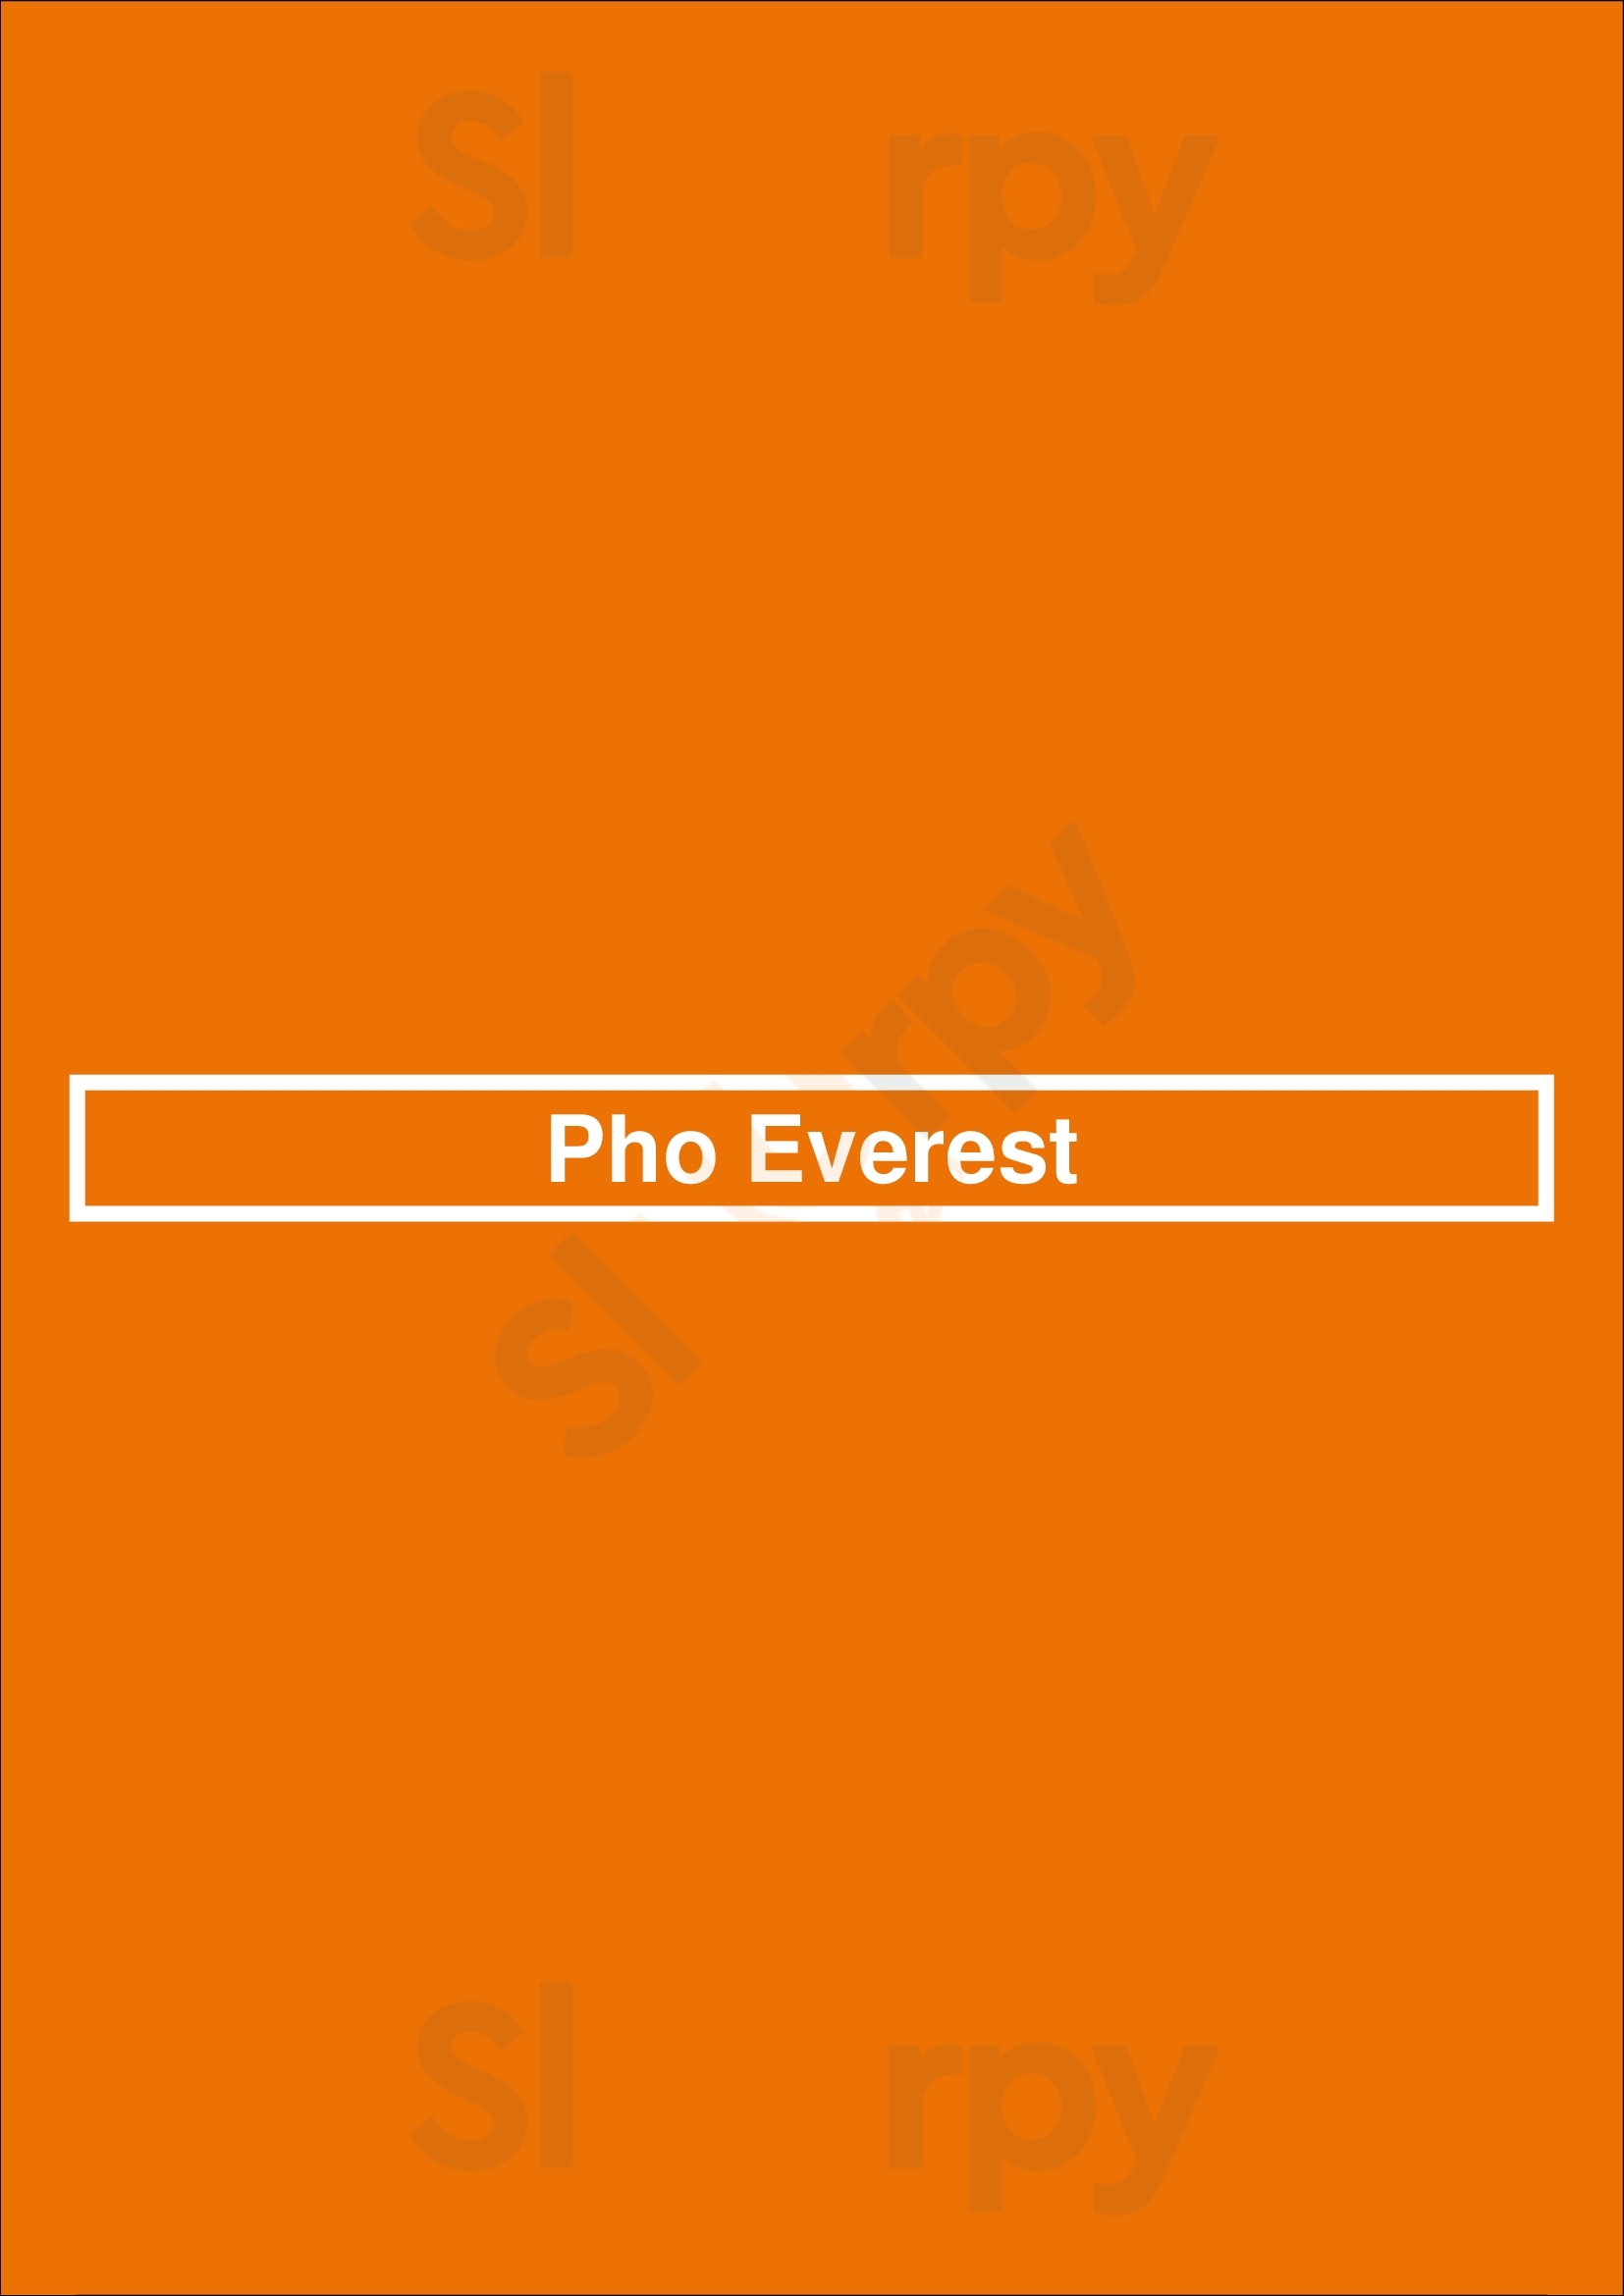 Pho Everest Lakeville Menu - 1